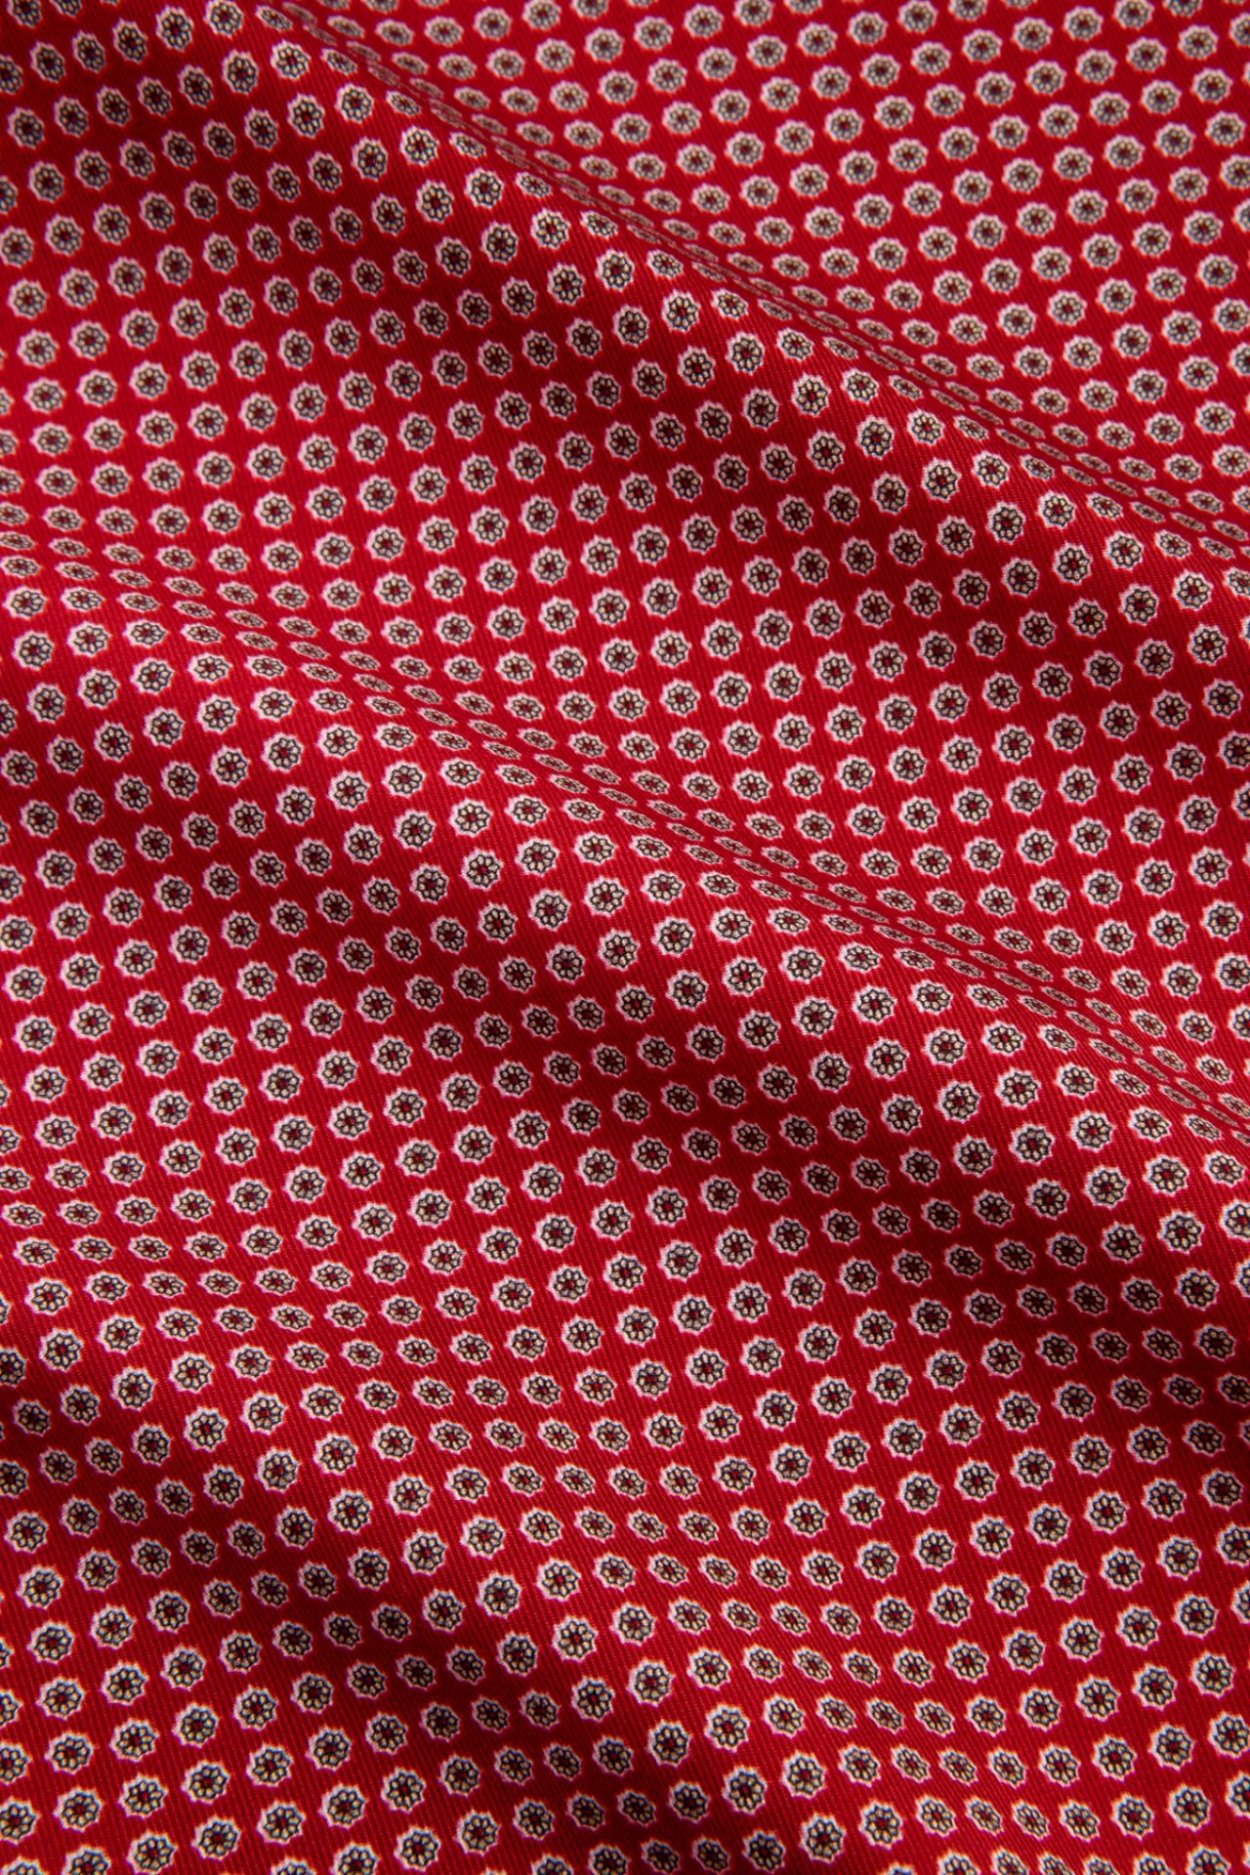 Červený hedvábný kapesníček se vzorem